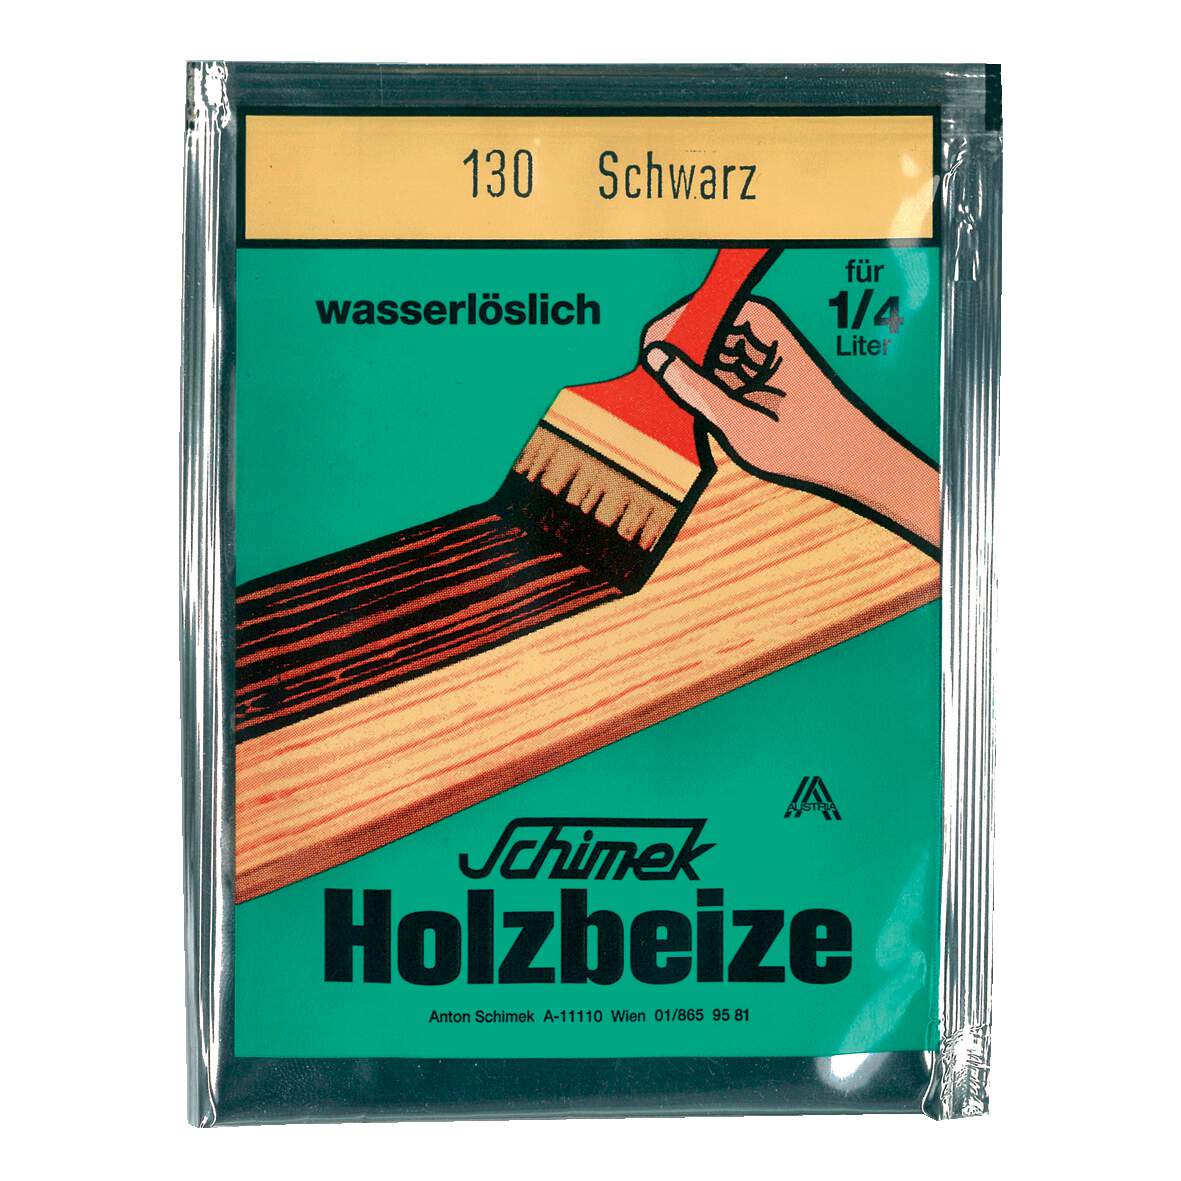 1216622 - Holzbeize wasserlöslich